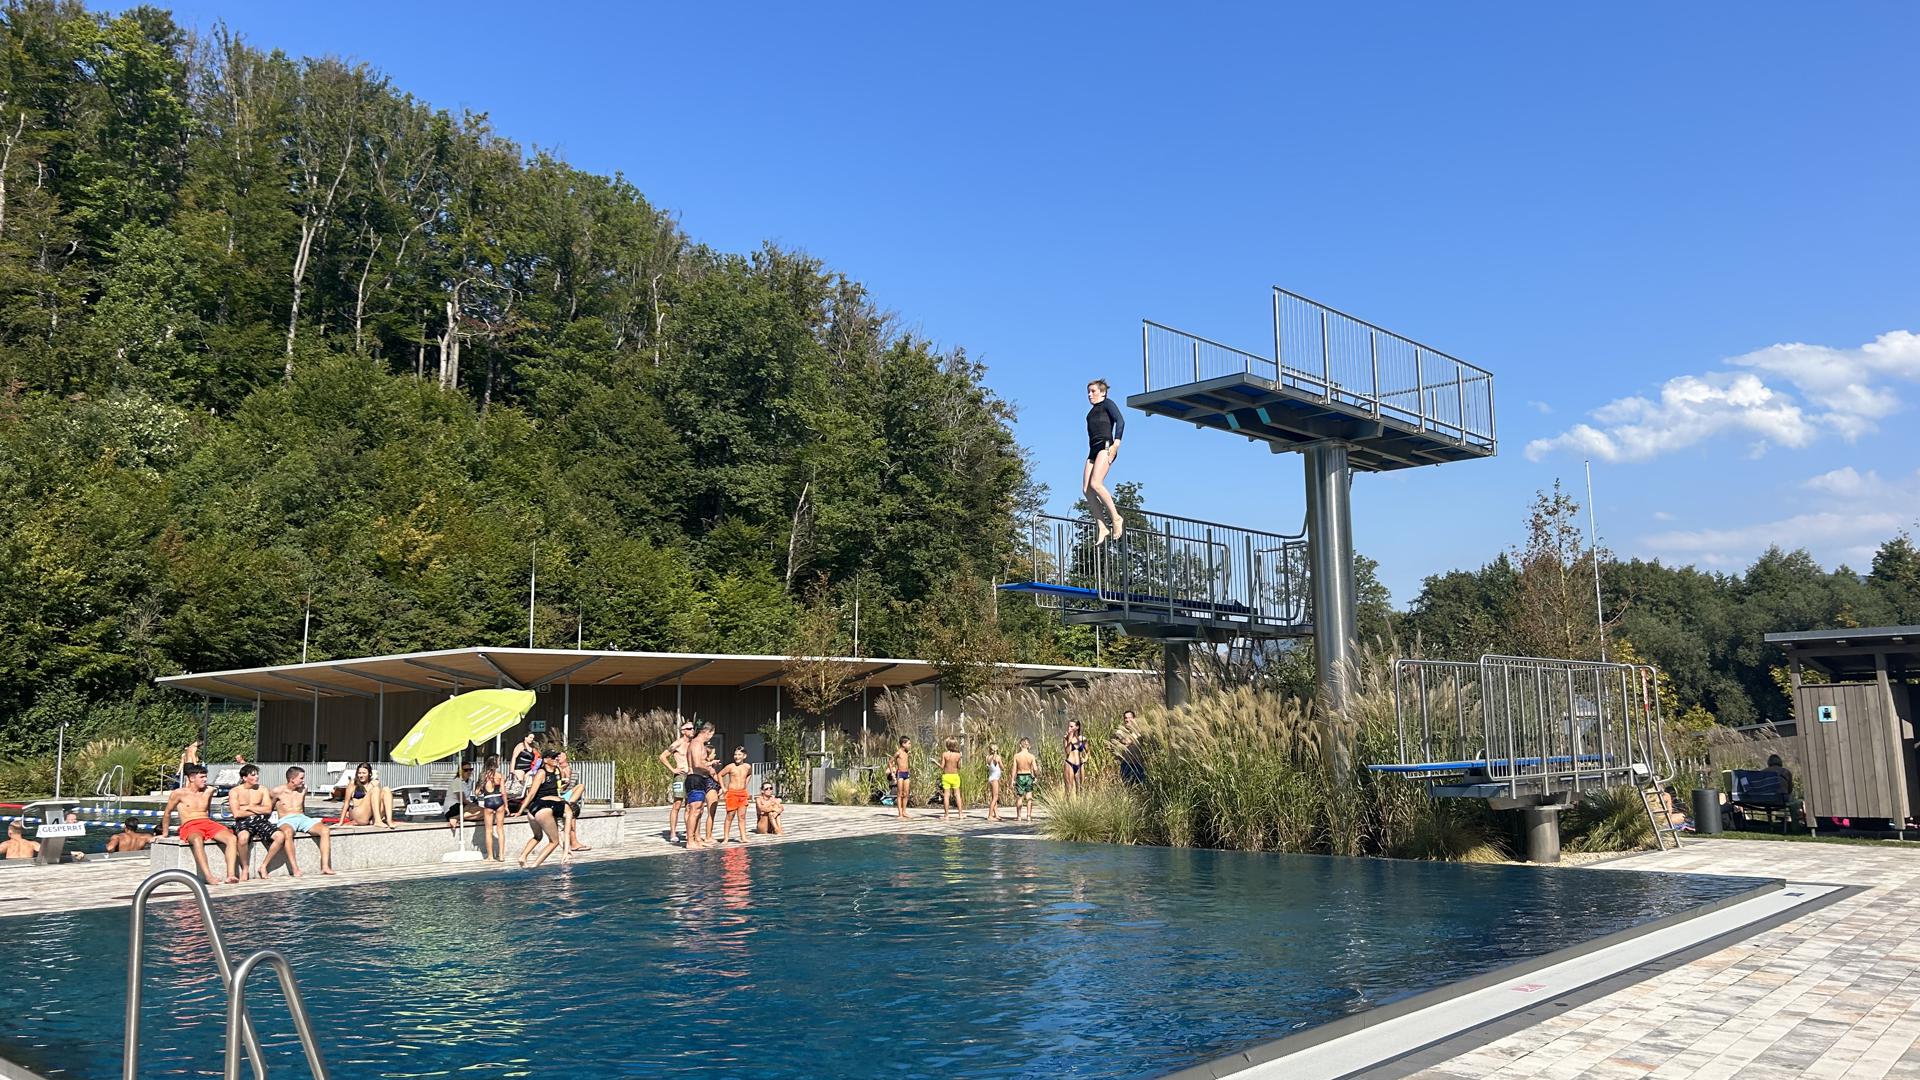 Ein Mensch springt von einem Turm in ein Schwimmbecken.